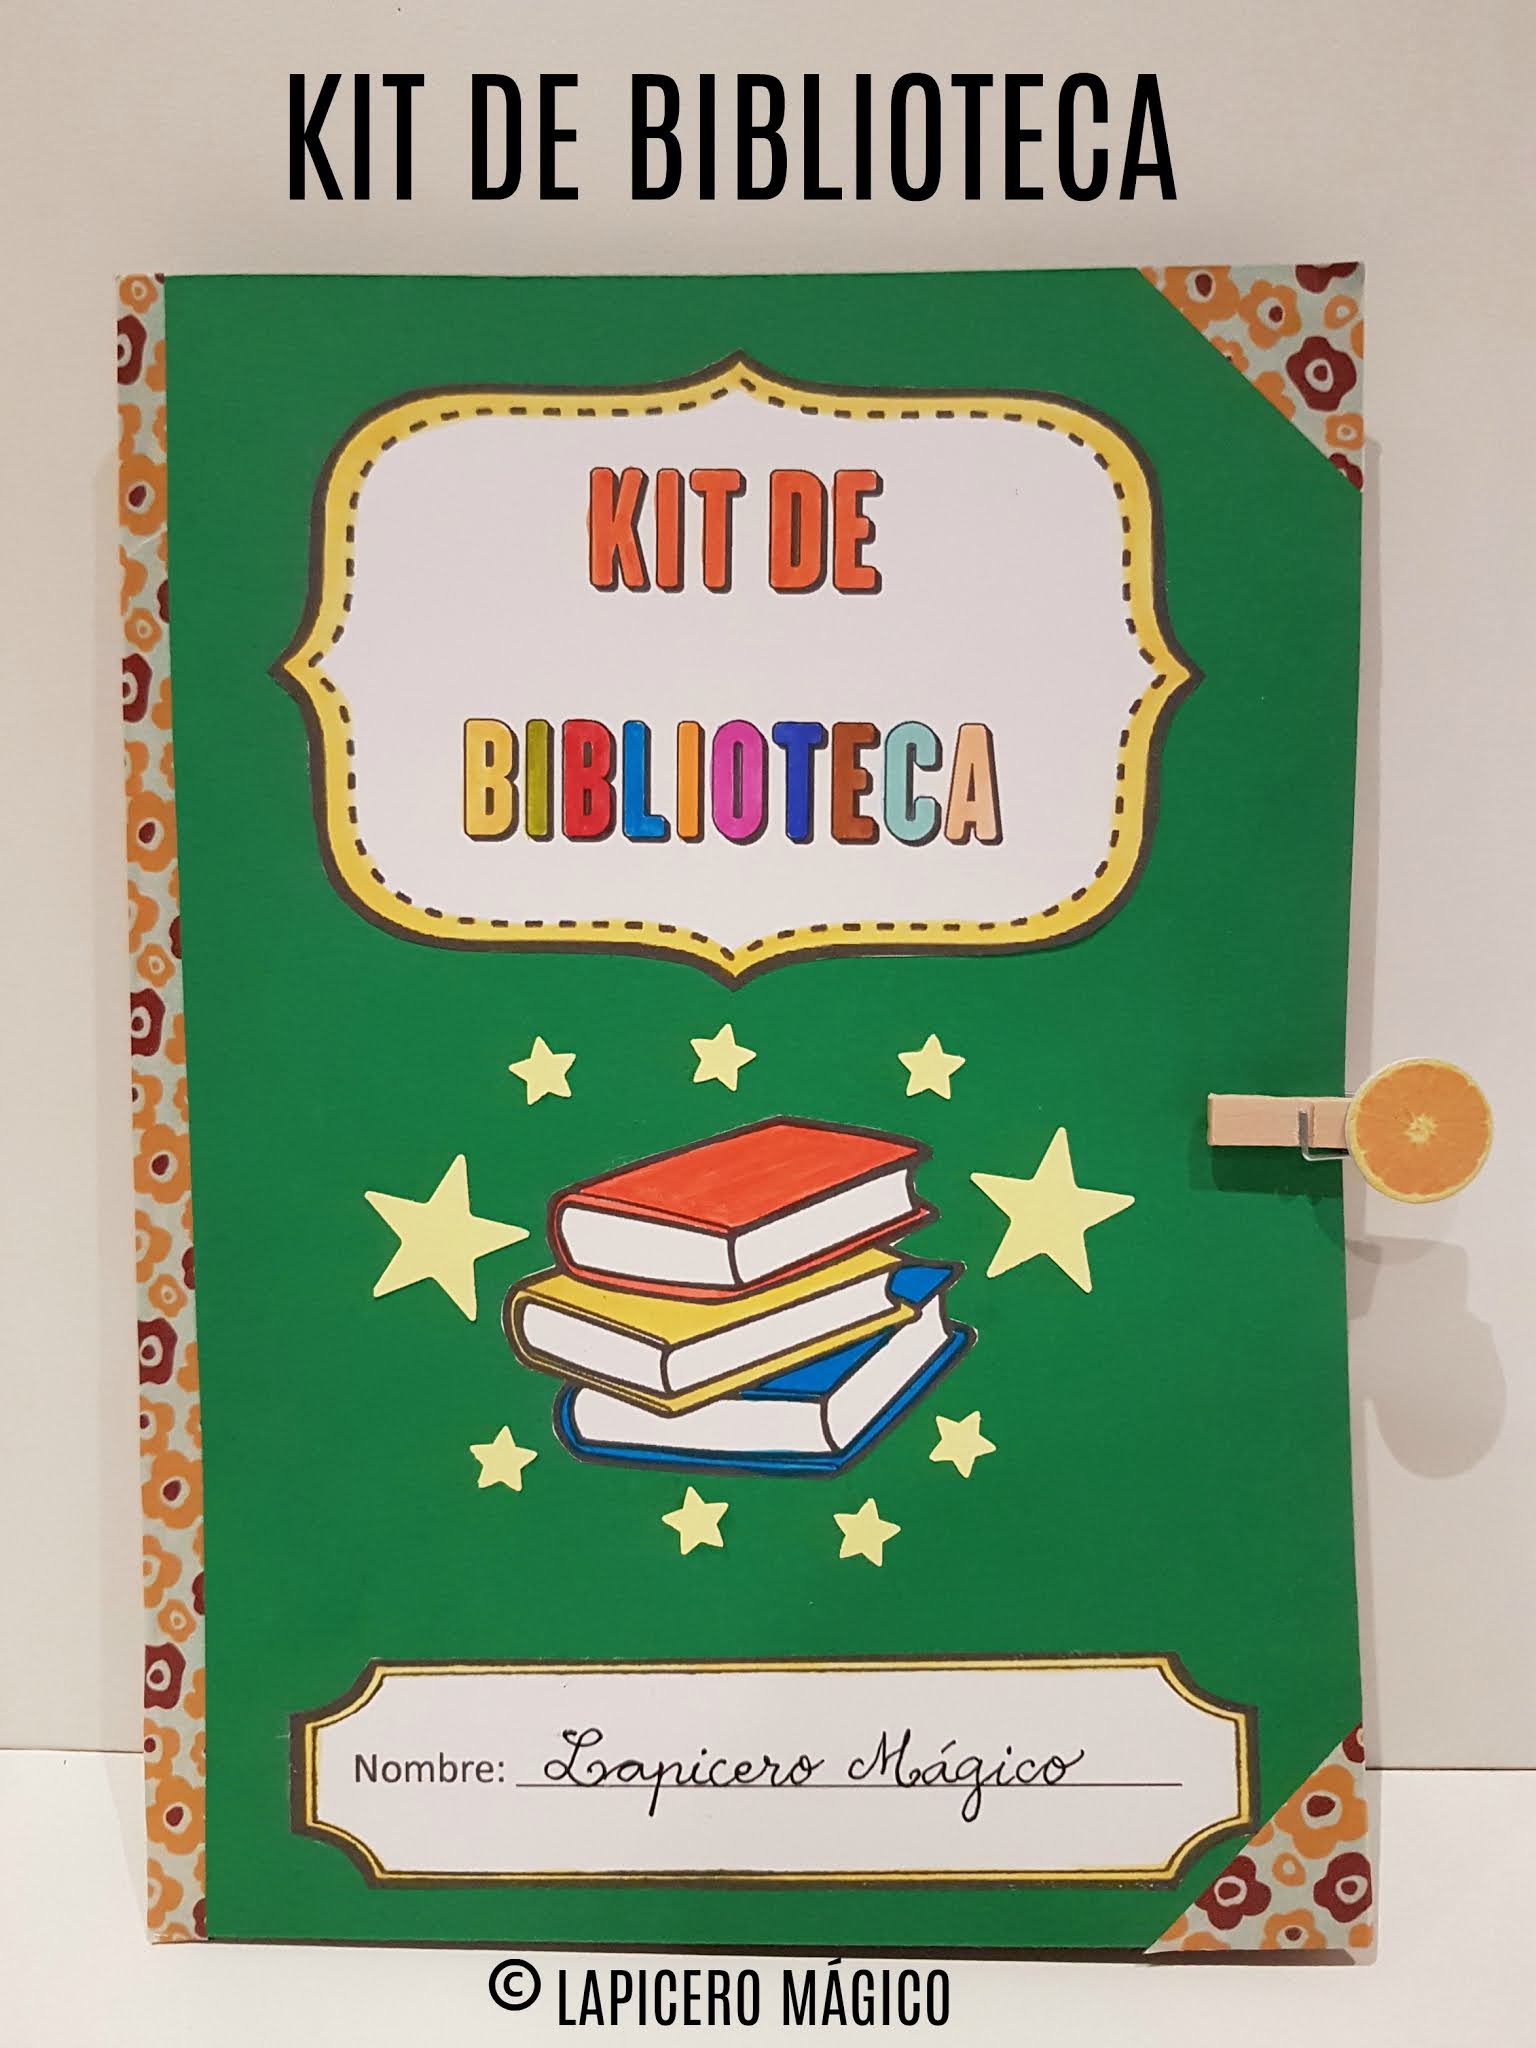 LAPICERO MÁGICO: Kit de biblioteca